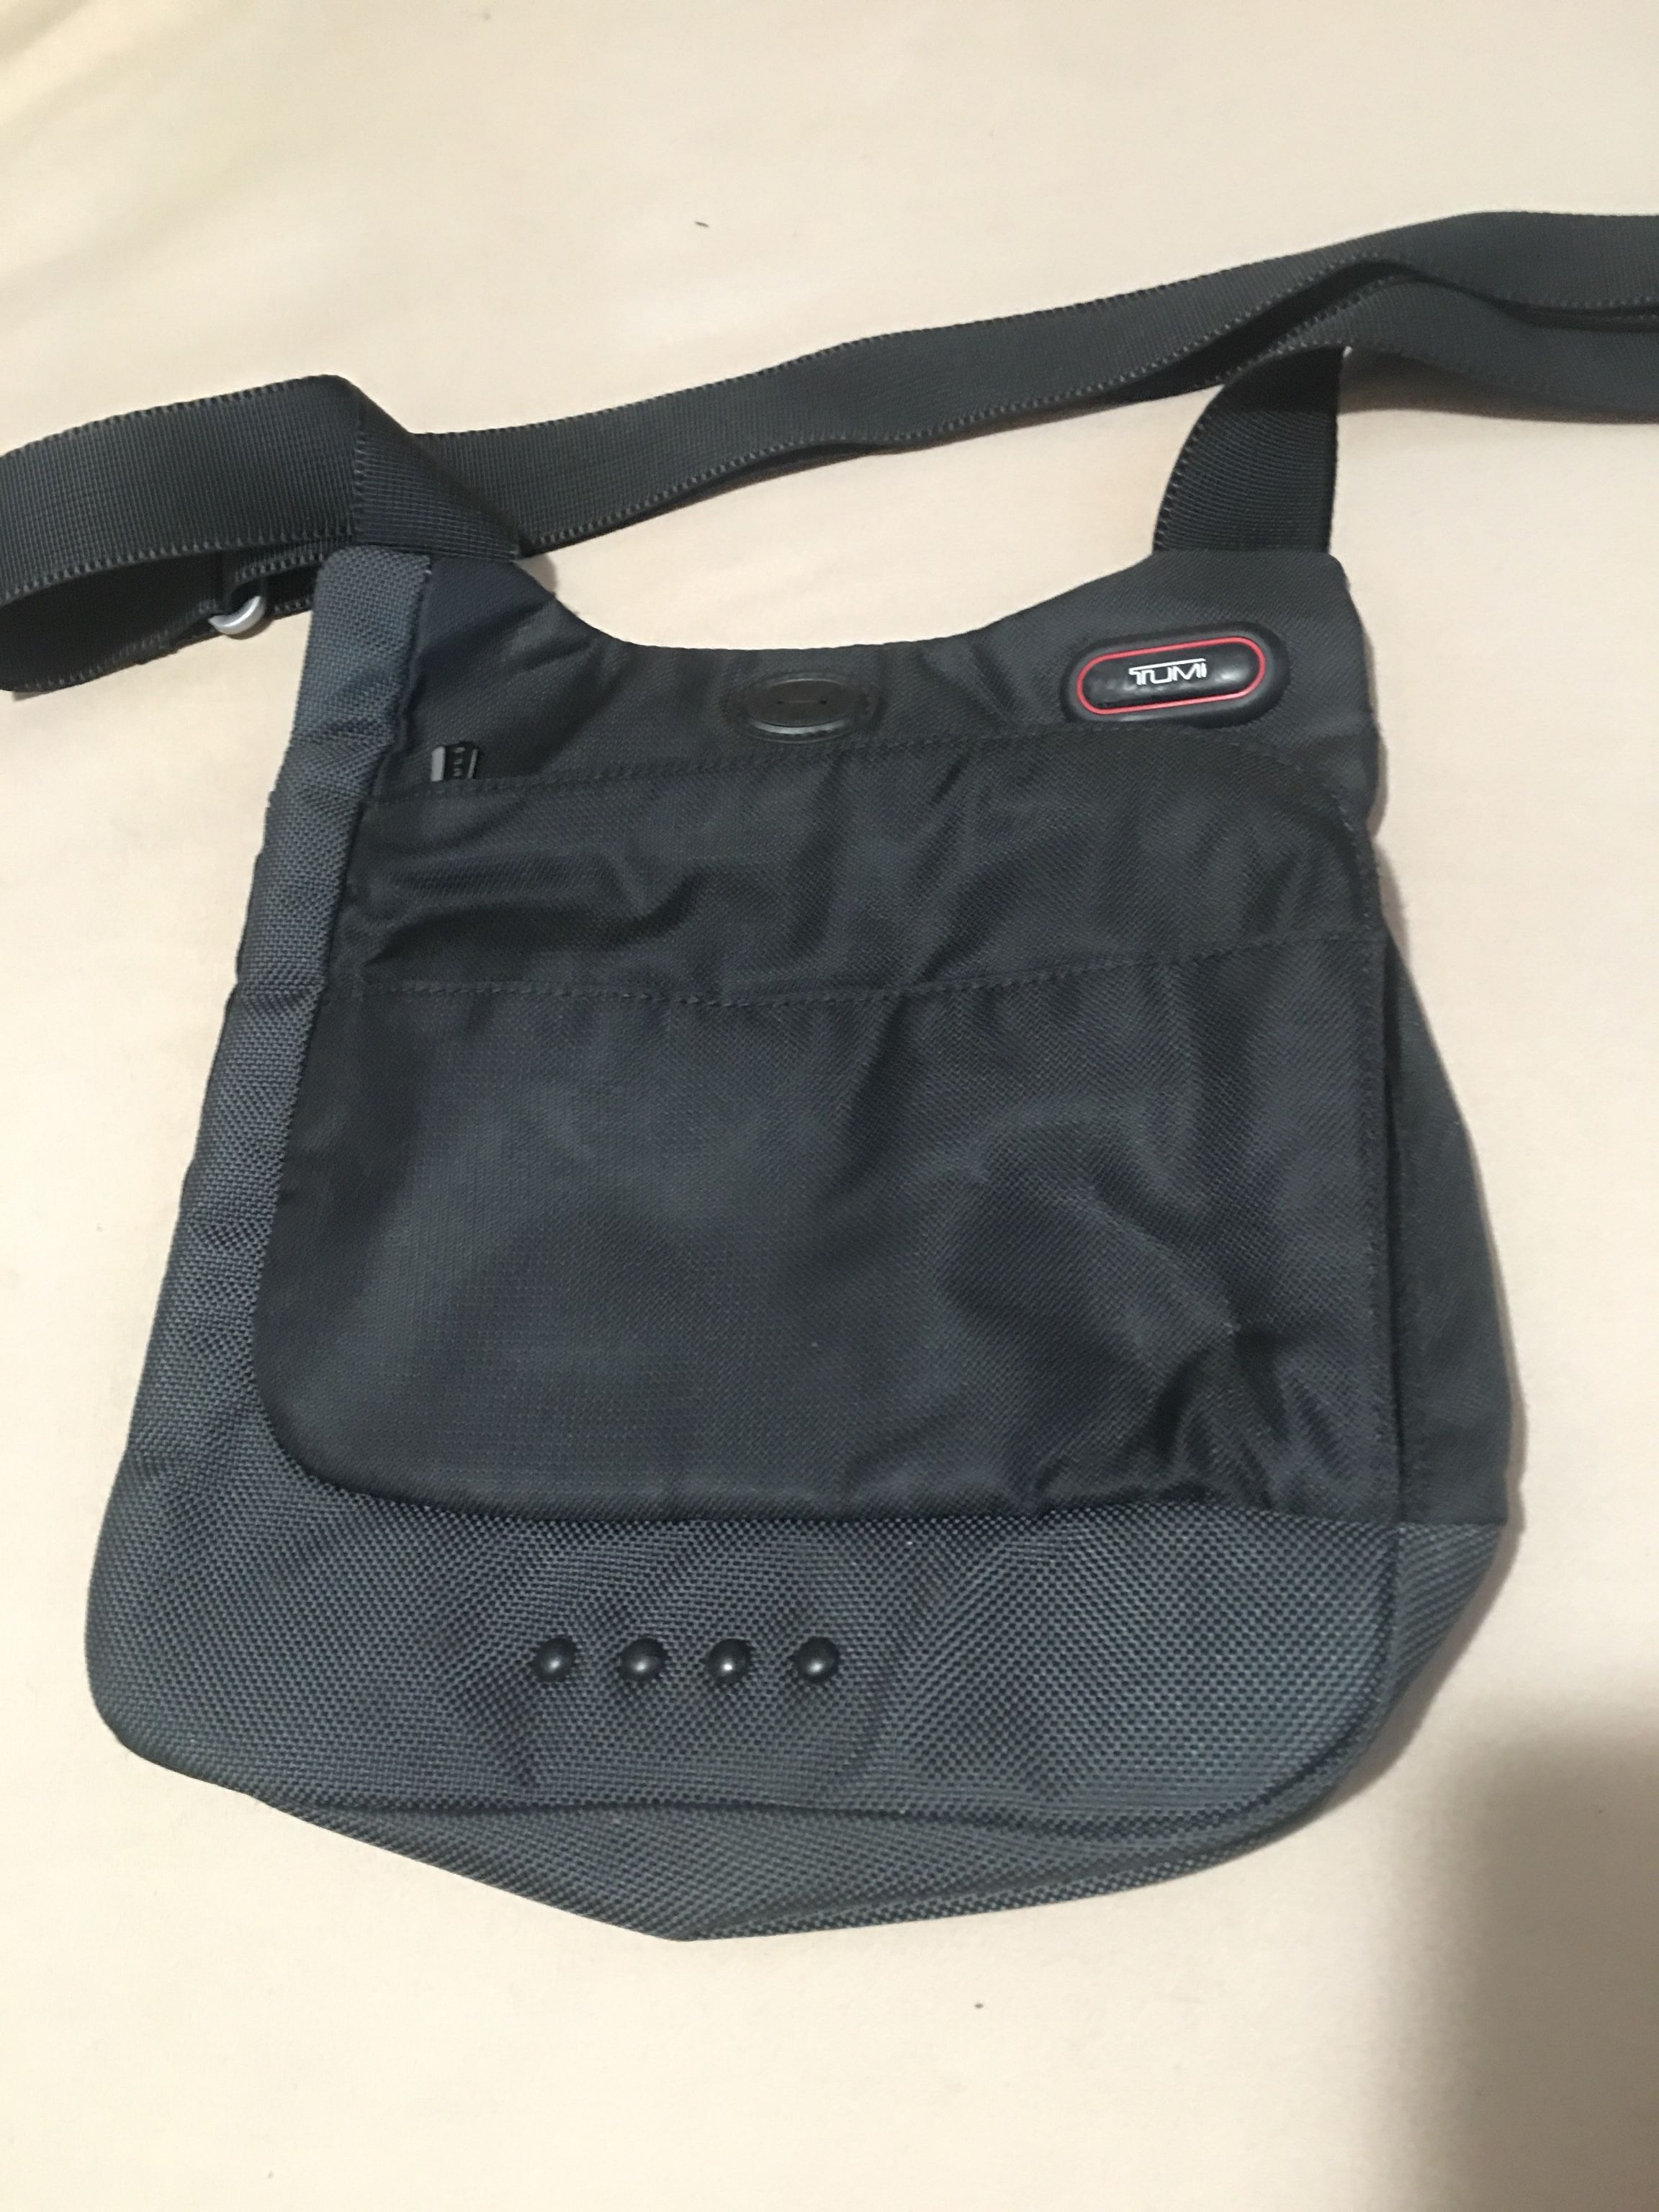 Tumi T Tech Black Nylon Unisex Messenger Bag / Purse